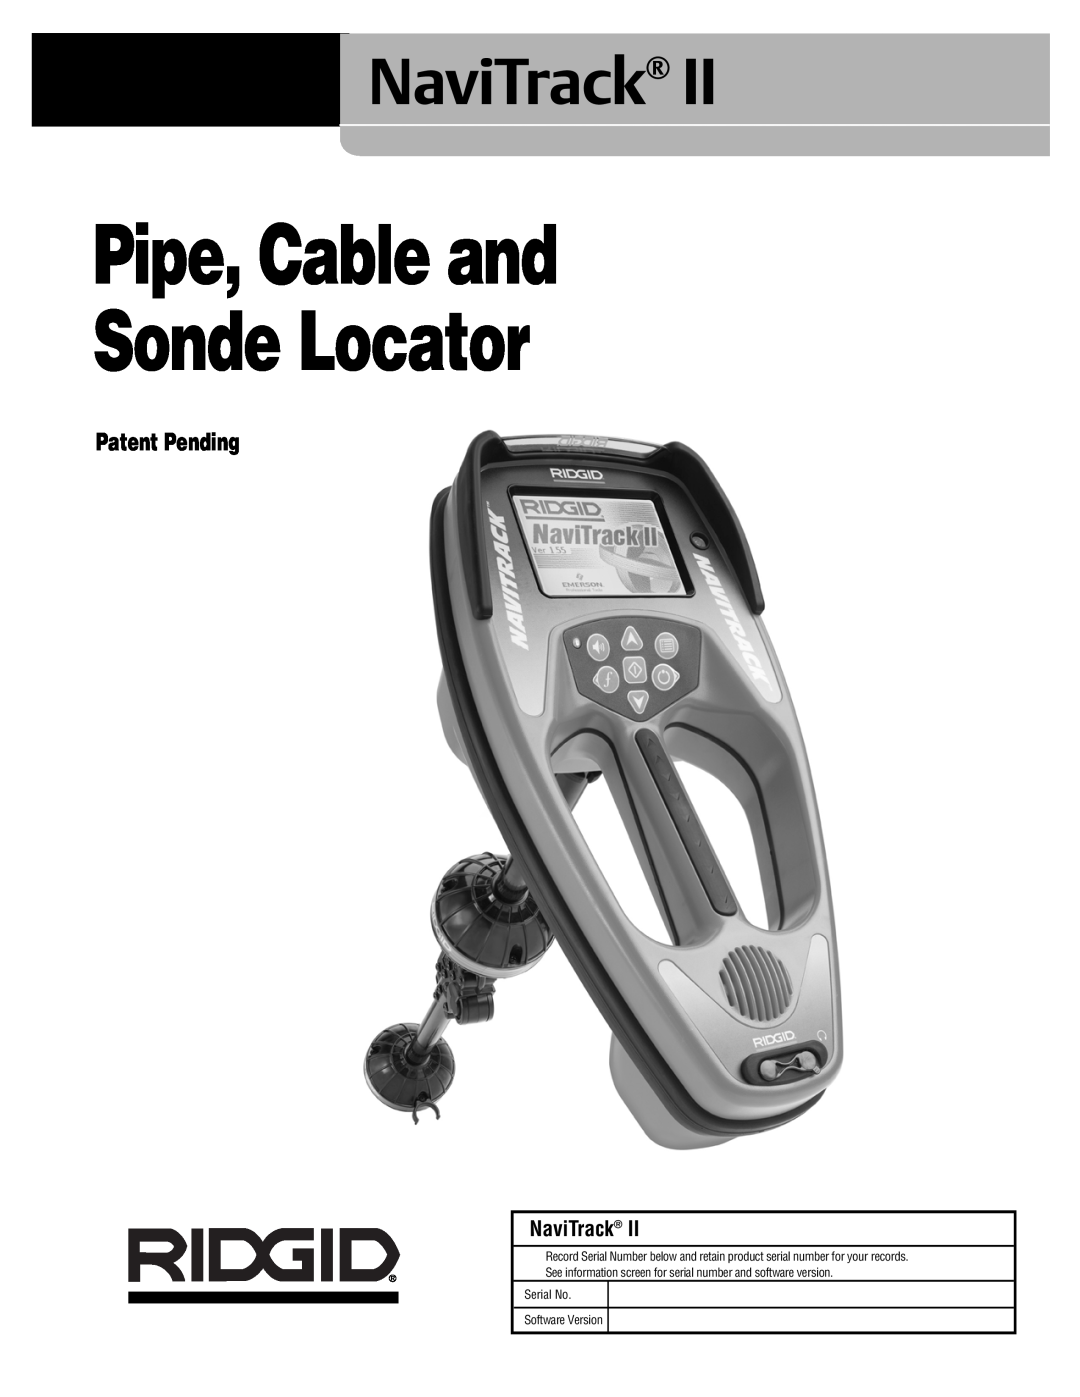 RIDGID Metal Detector manual NaviTrack, Patent Pending, Pipe, Cable and Sonde Locator 